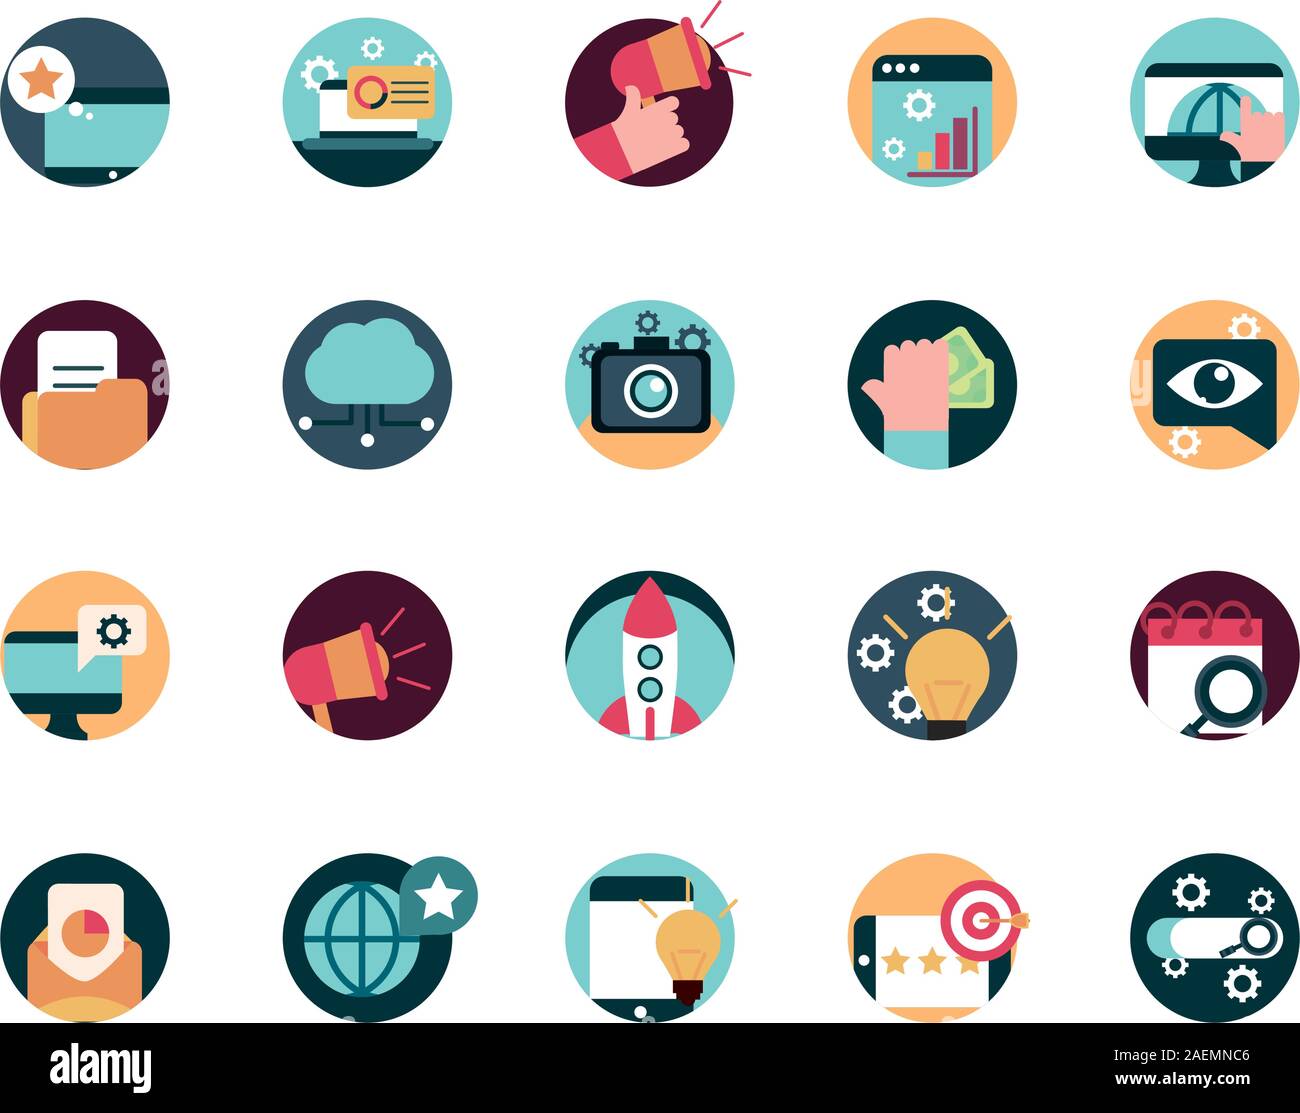 digital marketing advertising media icons set vector illustration Stock ...